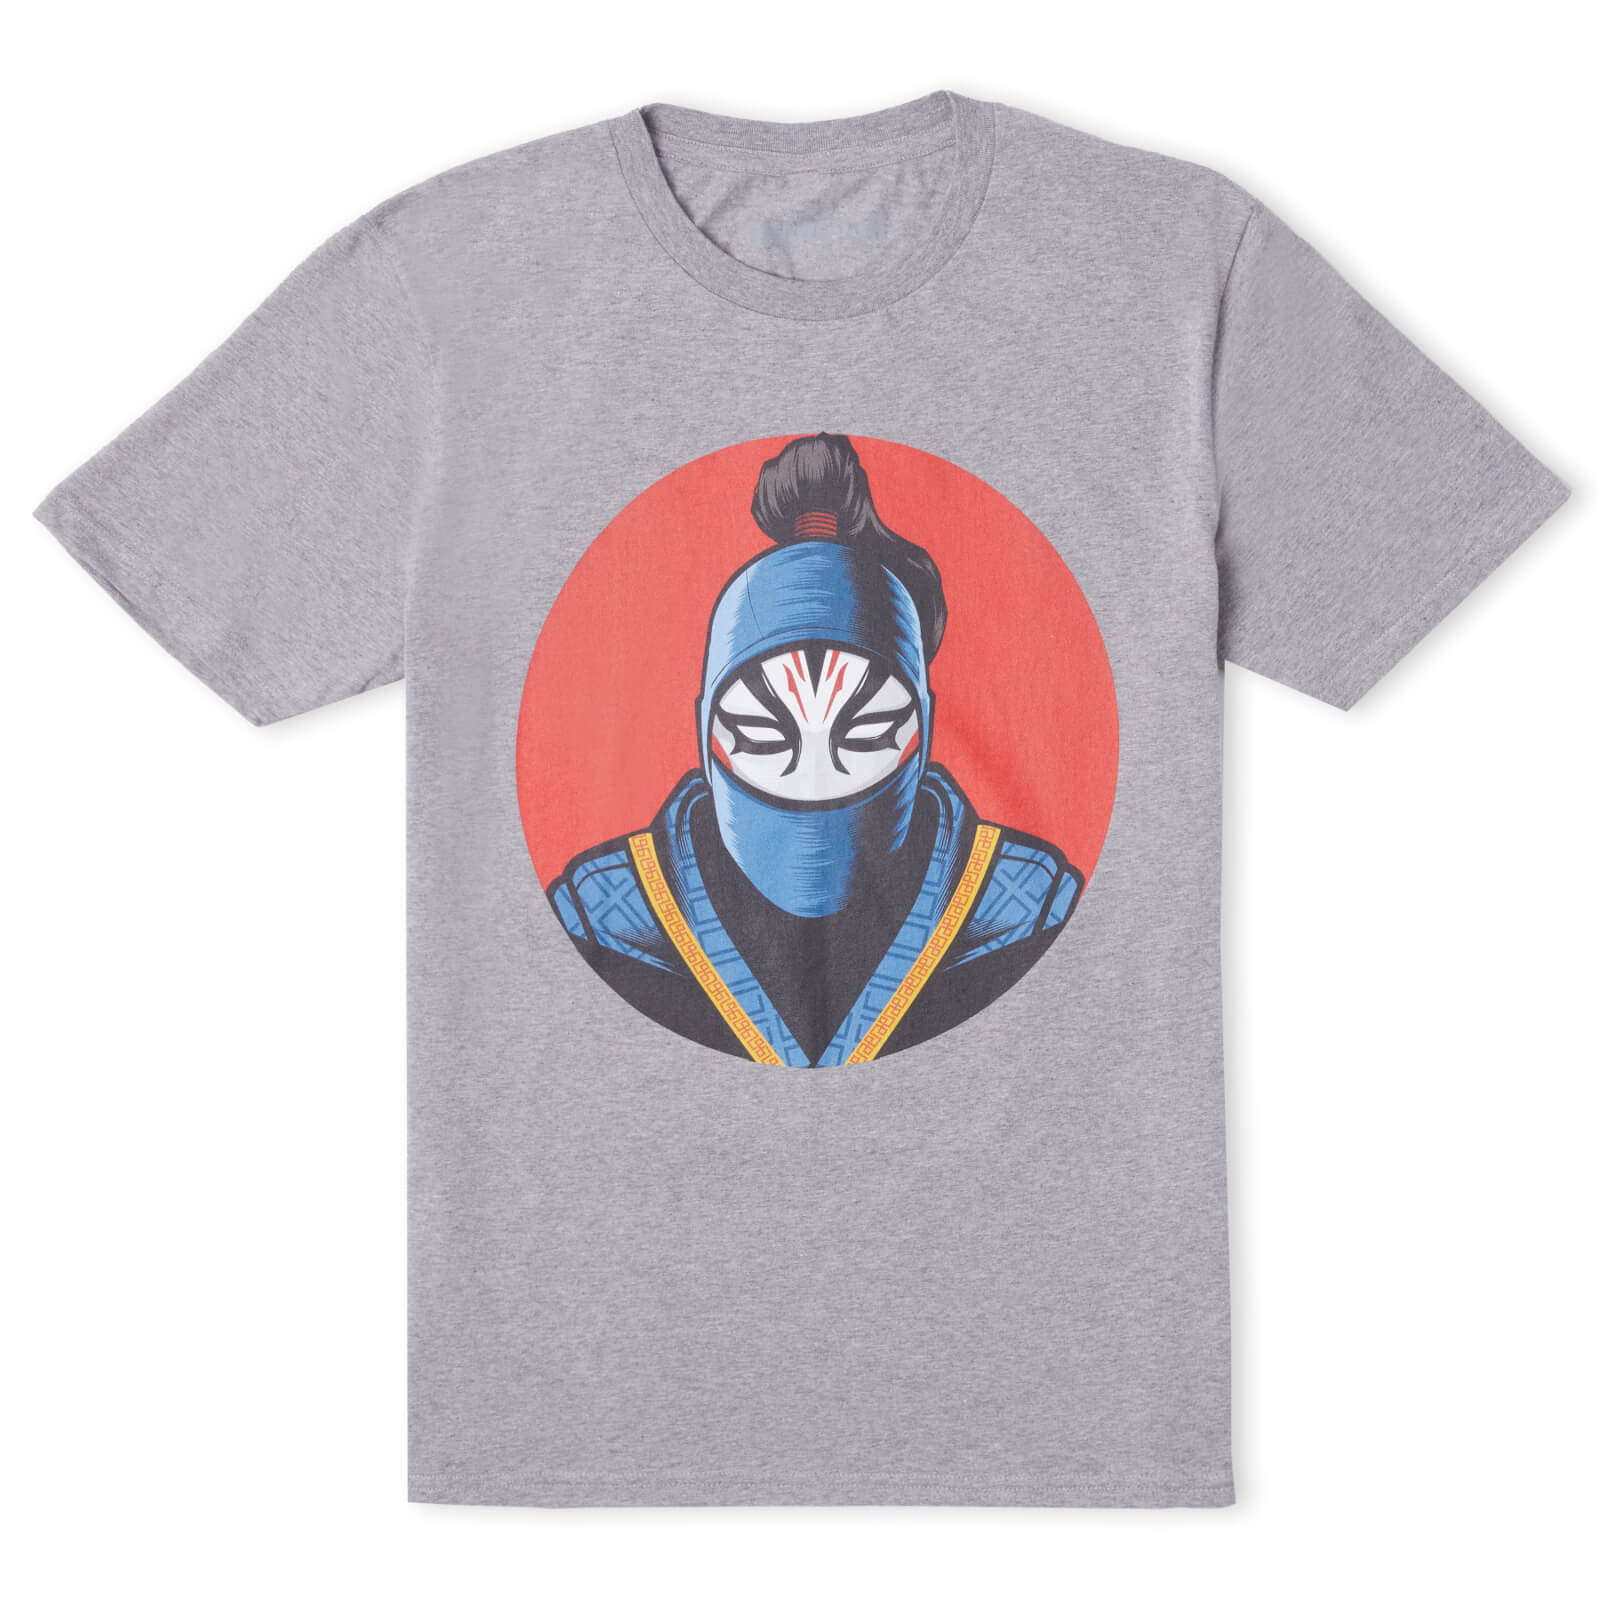 Shang-Chi Face Covered Men's T-Shirt - Grey - XS - Grey